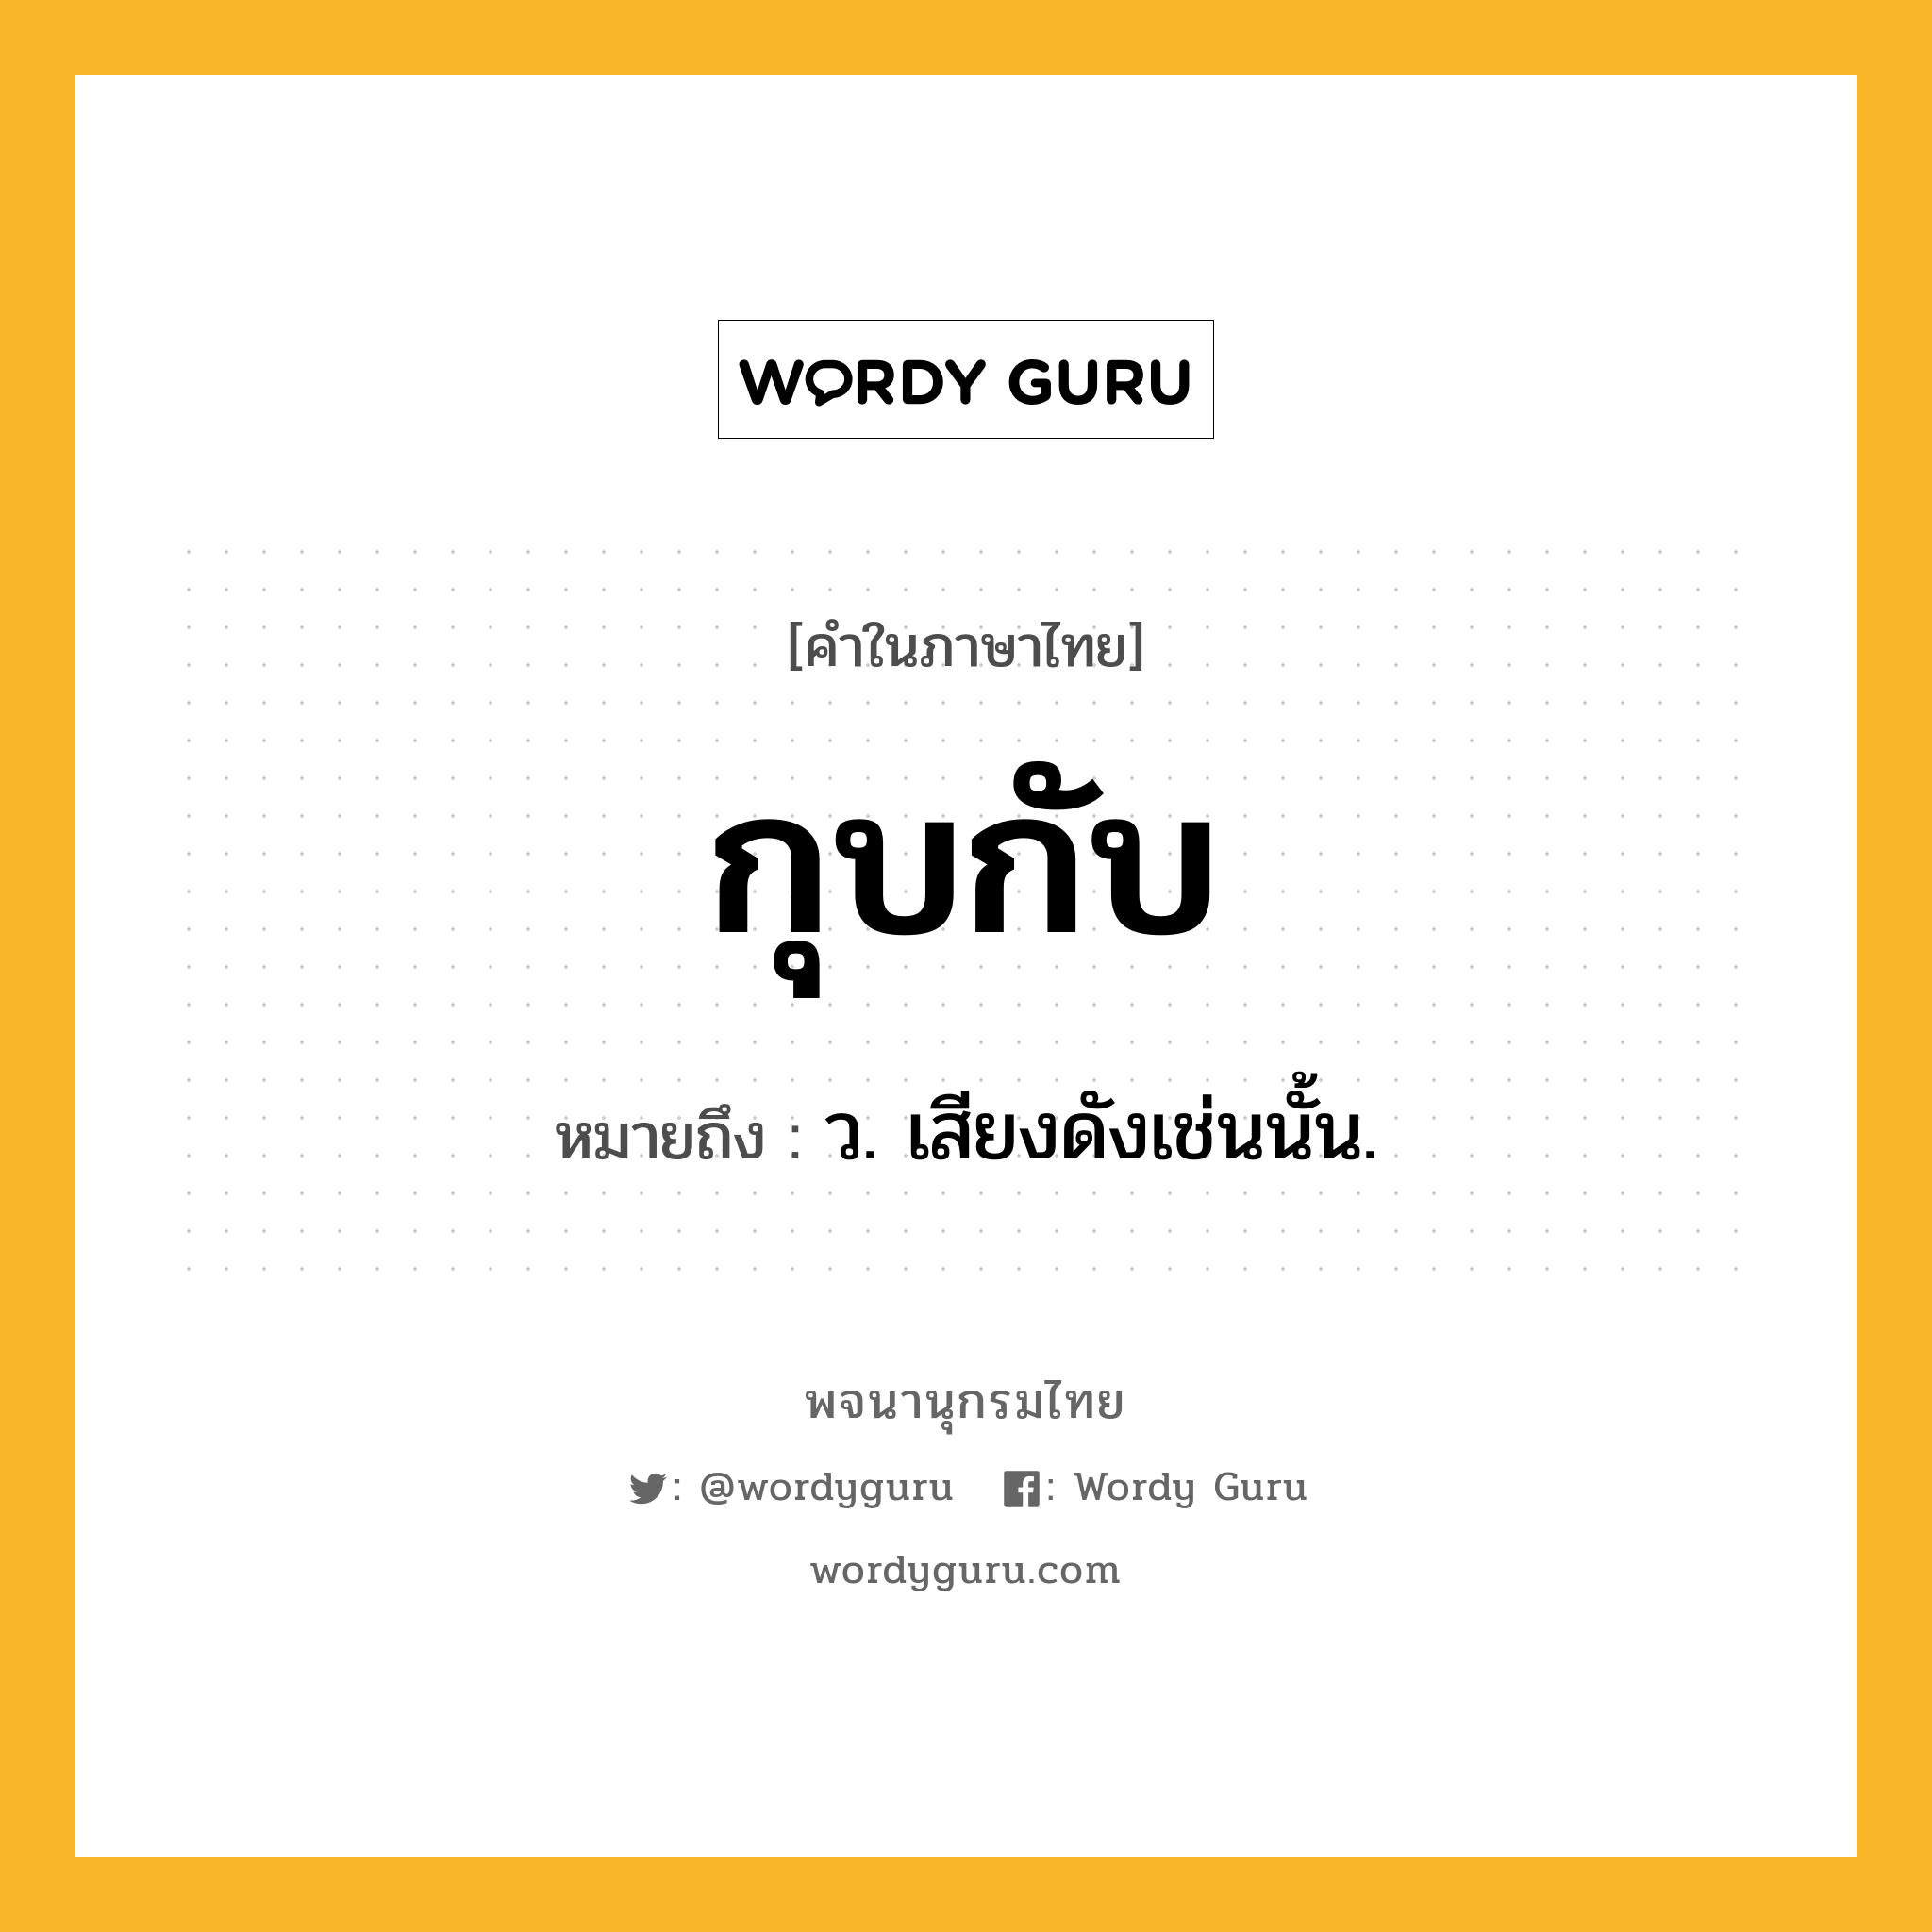 กุบกับ ความหมาย หมายถึงอะไร?, คำในภาษาไทย กุบกับ หมายถึง ว. เสียงดังเช่นนั้น.